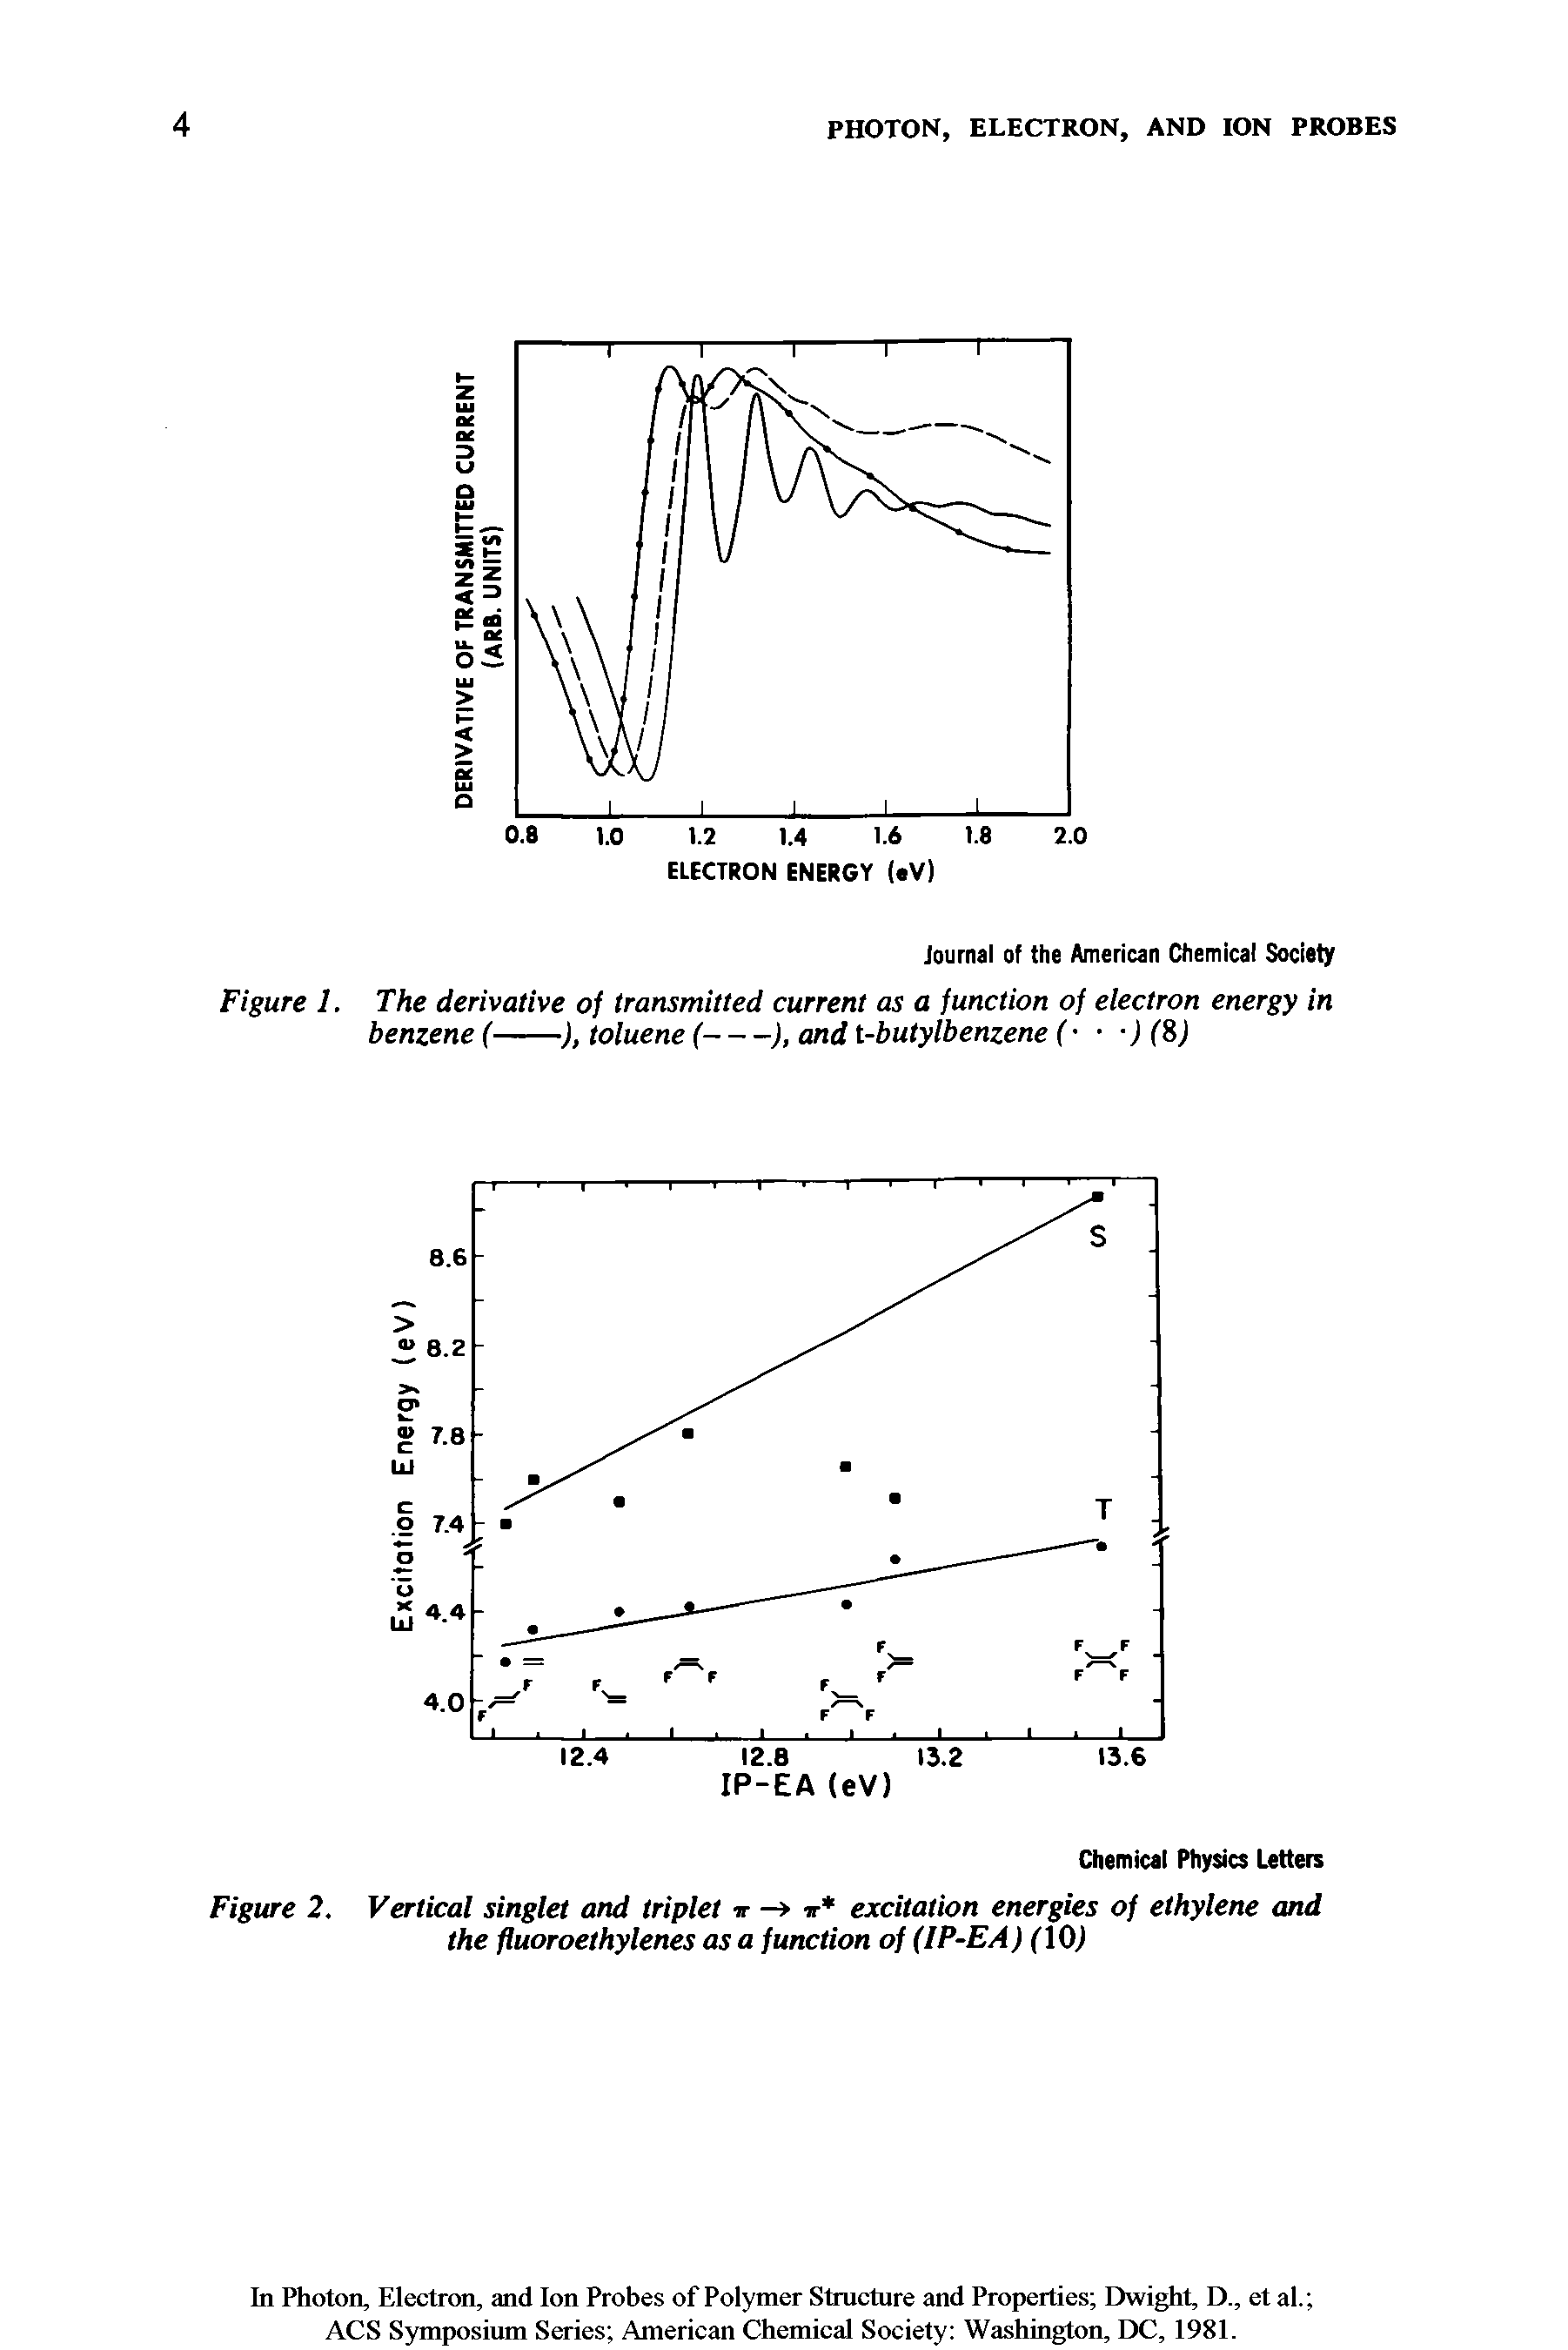 Figure 2. Vertical singlet and triplet ir - ir excitation energies of ethylene and the fluoroethylenes as a function of (IP-EA) flOJ...